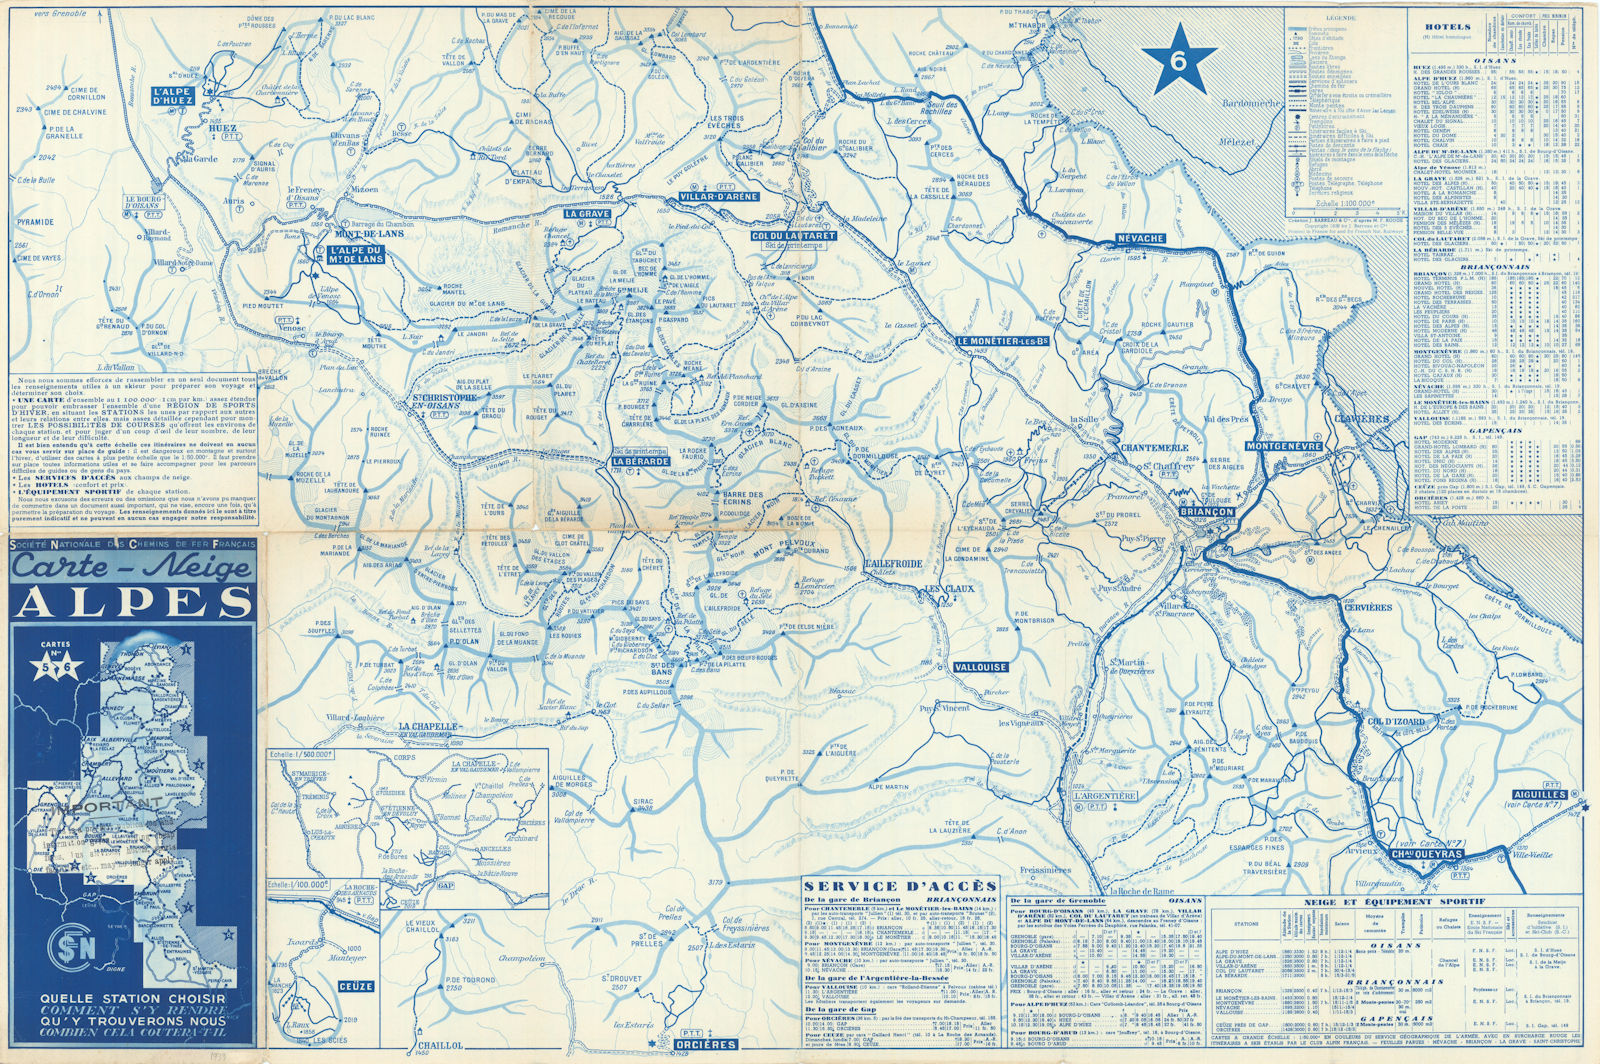 SNCF Carte-Neige Alpes #5-6 Hautes-Alpes/Isère Ski resorts map Alpe d'Huez 1939